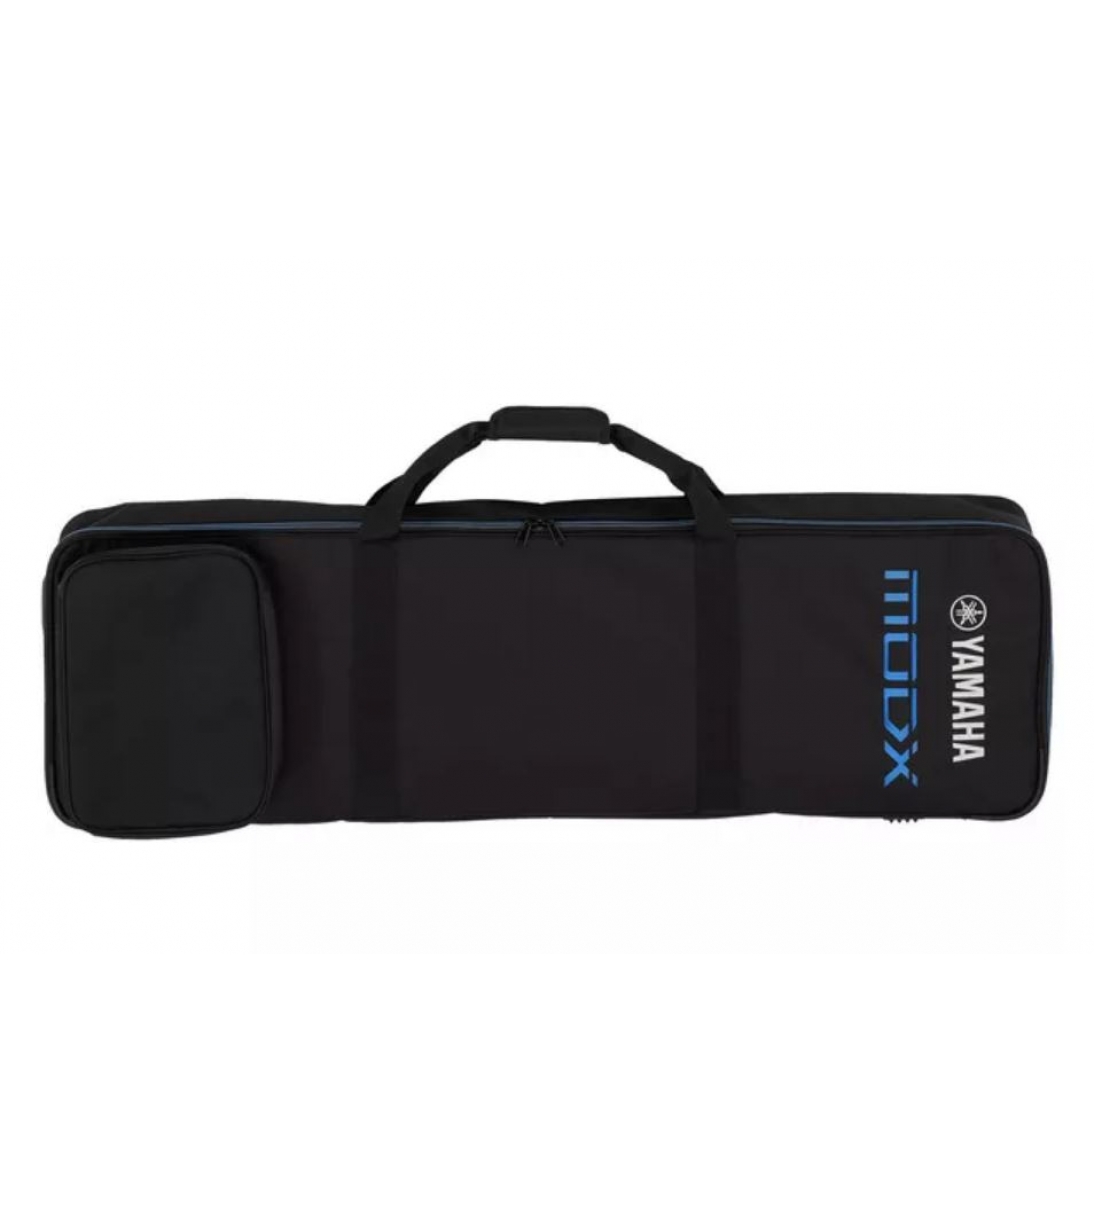 MODX7 Softcase (1170 x 360 x 210mm)